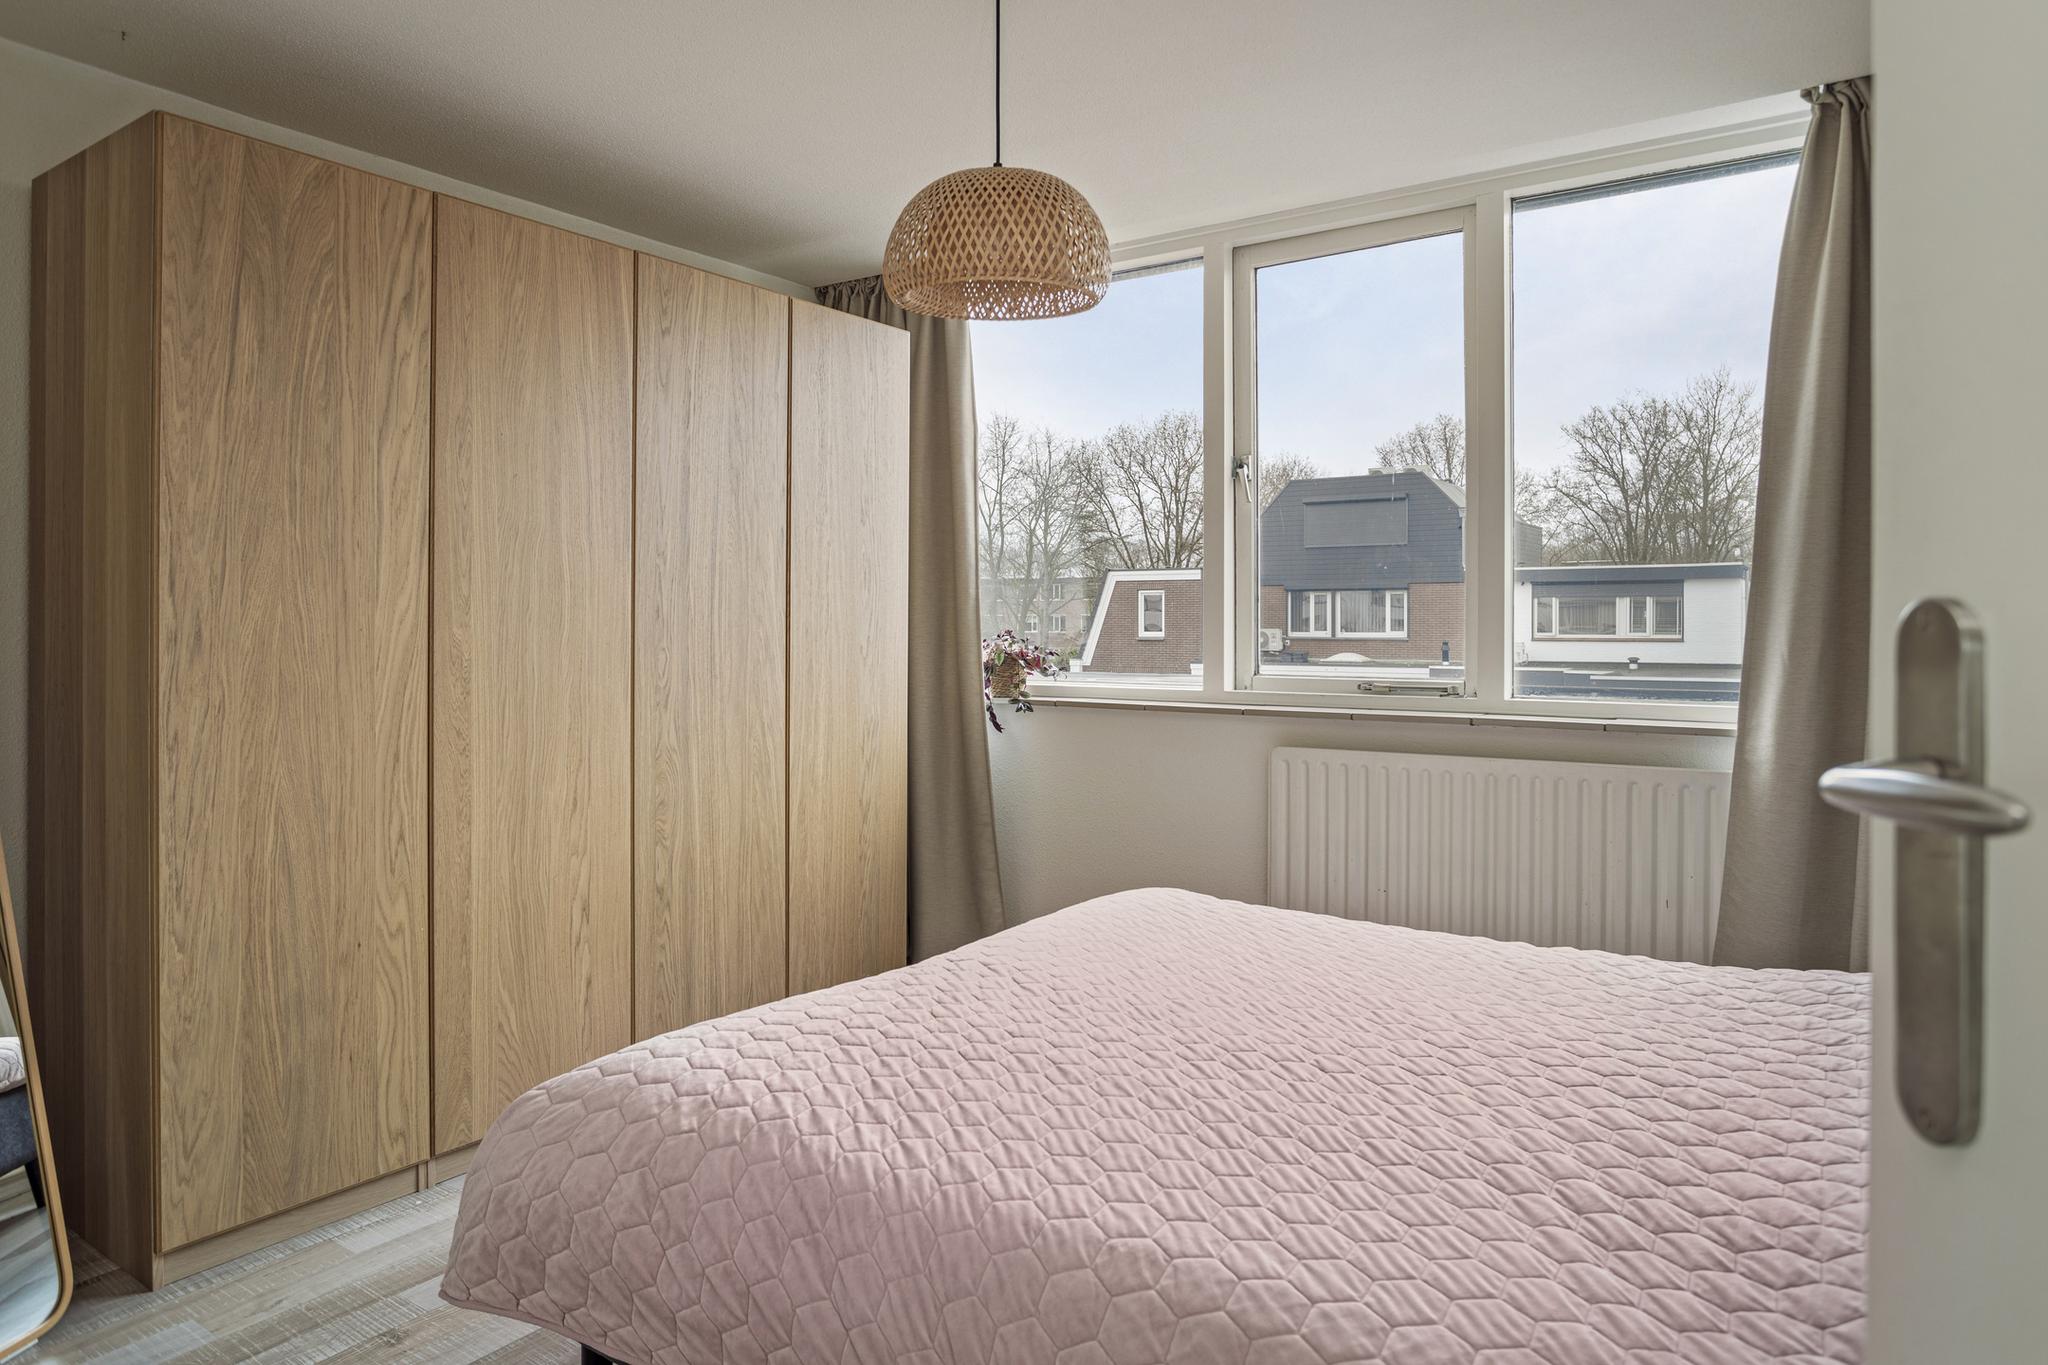 Slaapkamer 1 richting bed, Willem van Geldorpstraat 23 Rosmalen